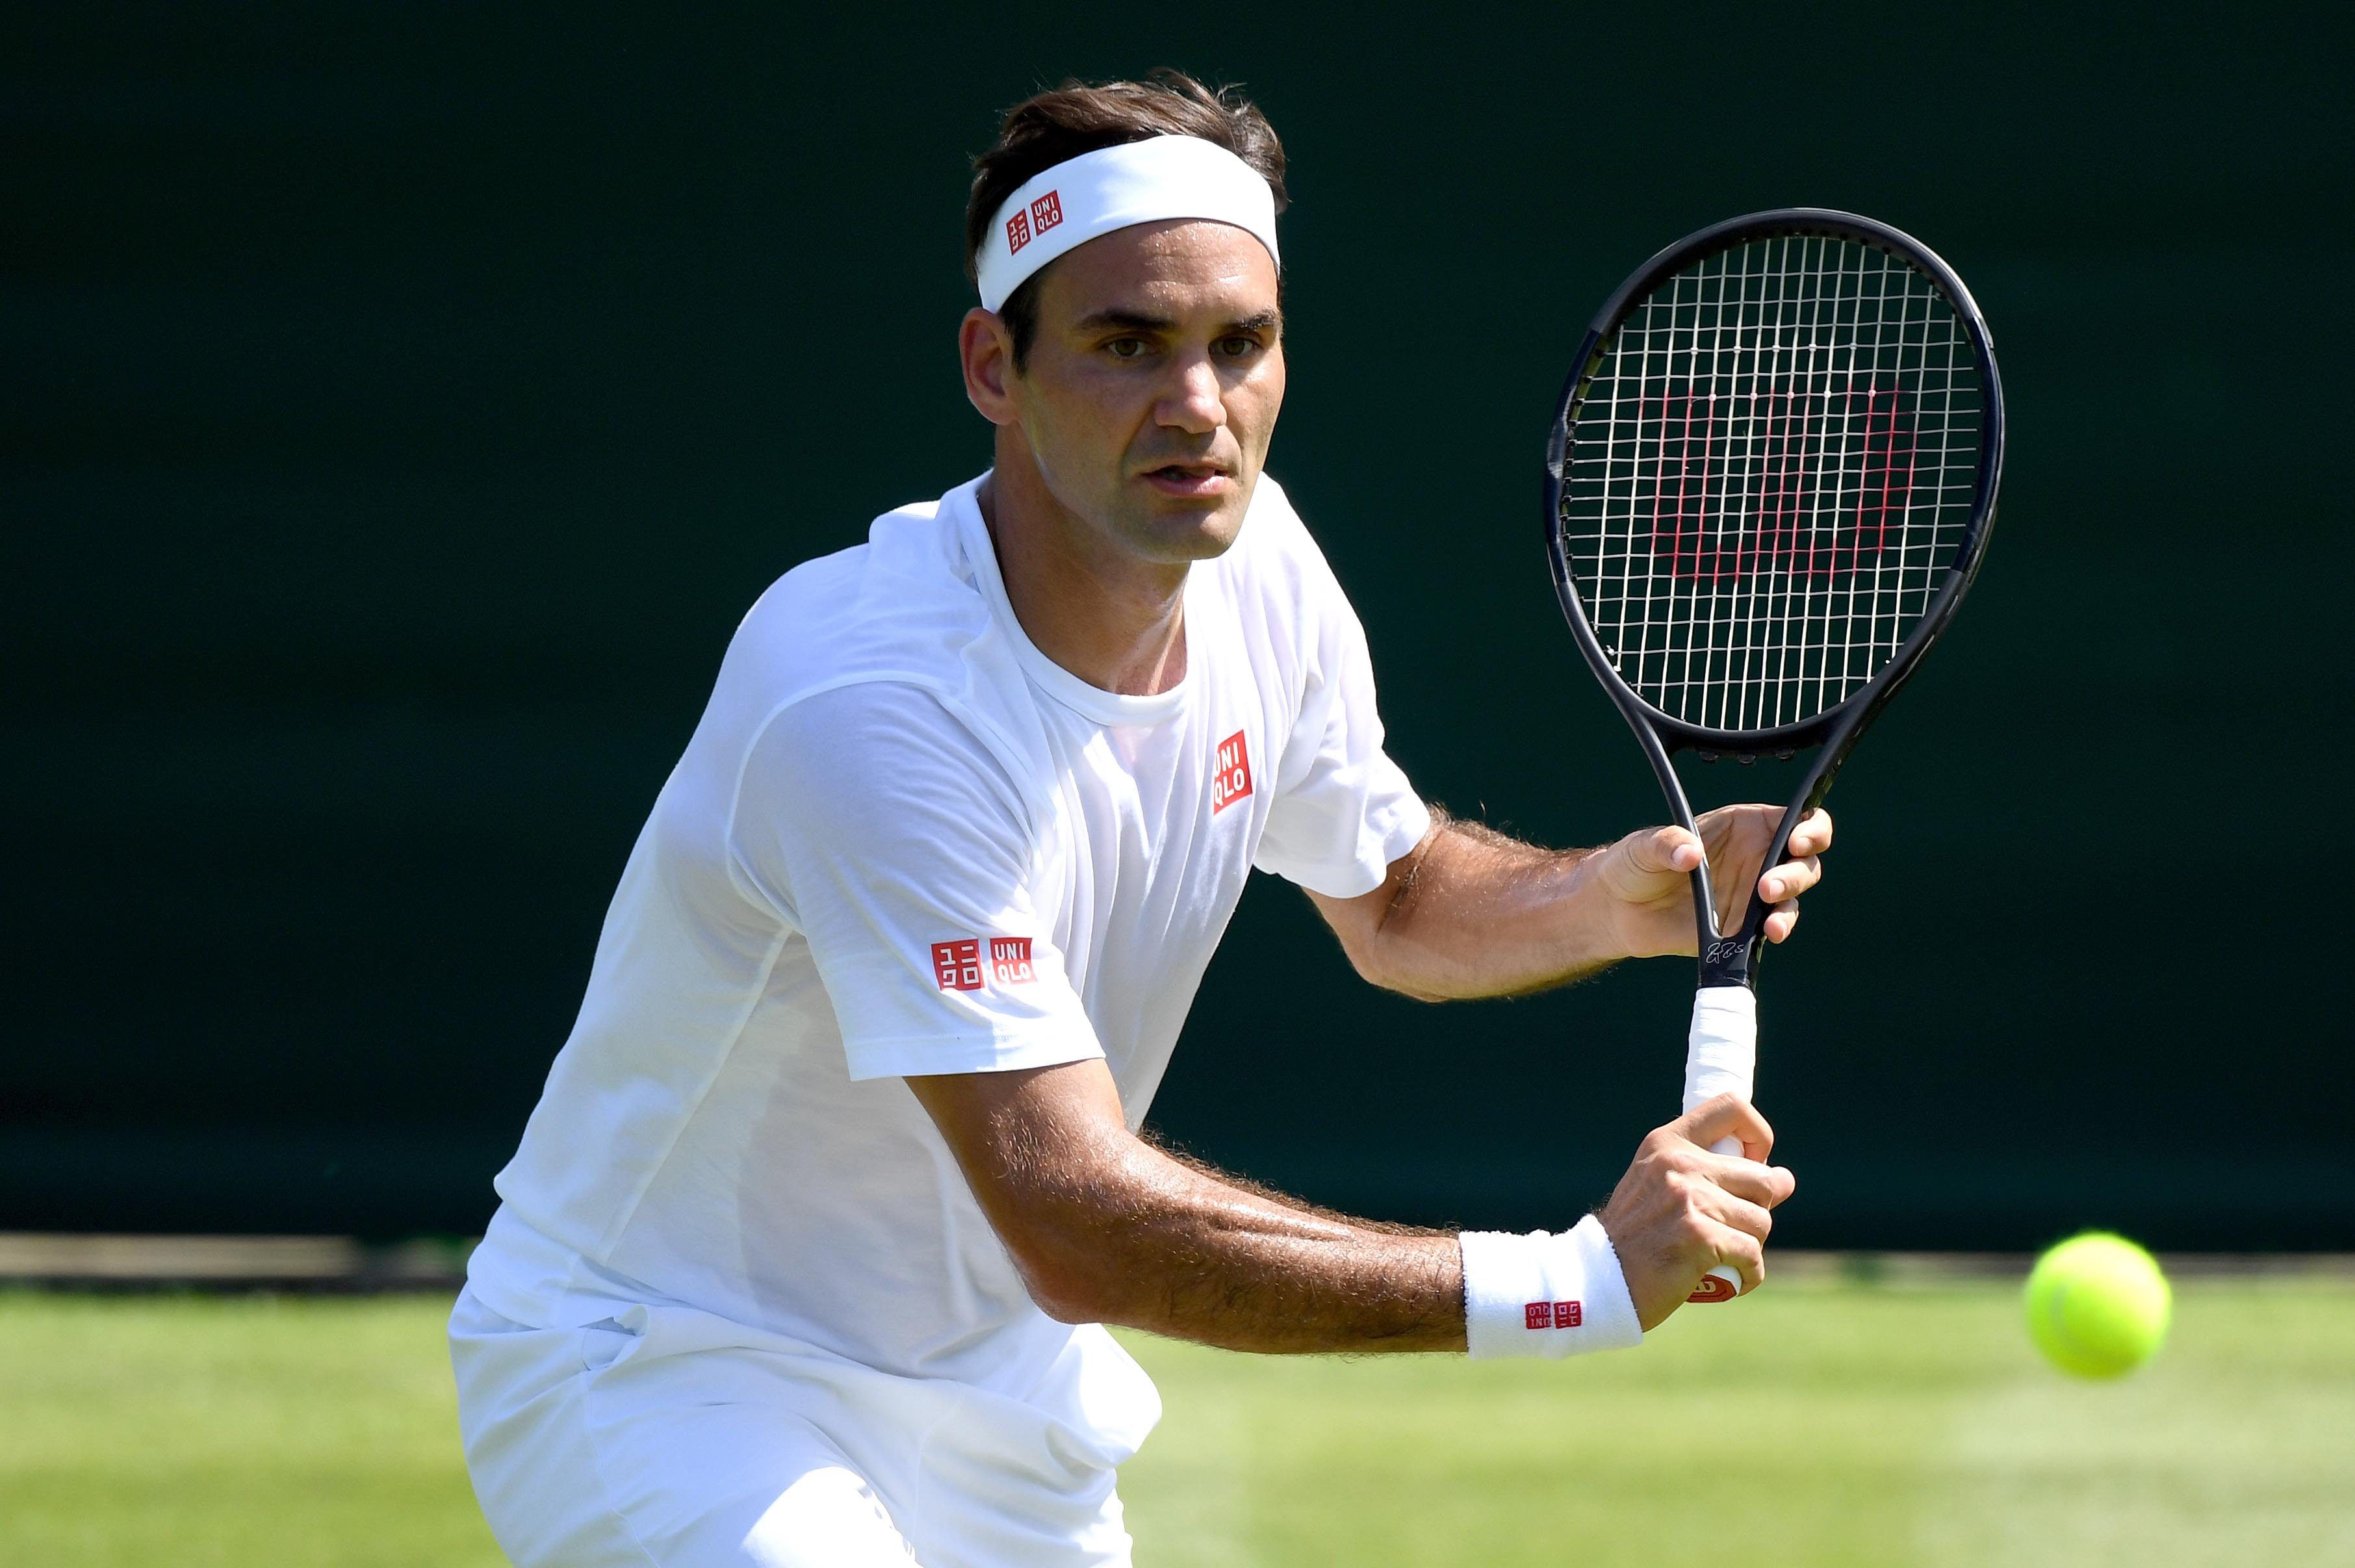 Wann spielt Roger Federer als nächstes? Wann spielt Federer in Wimbledon?